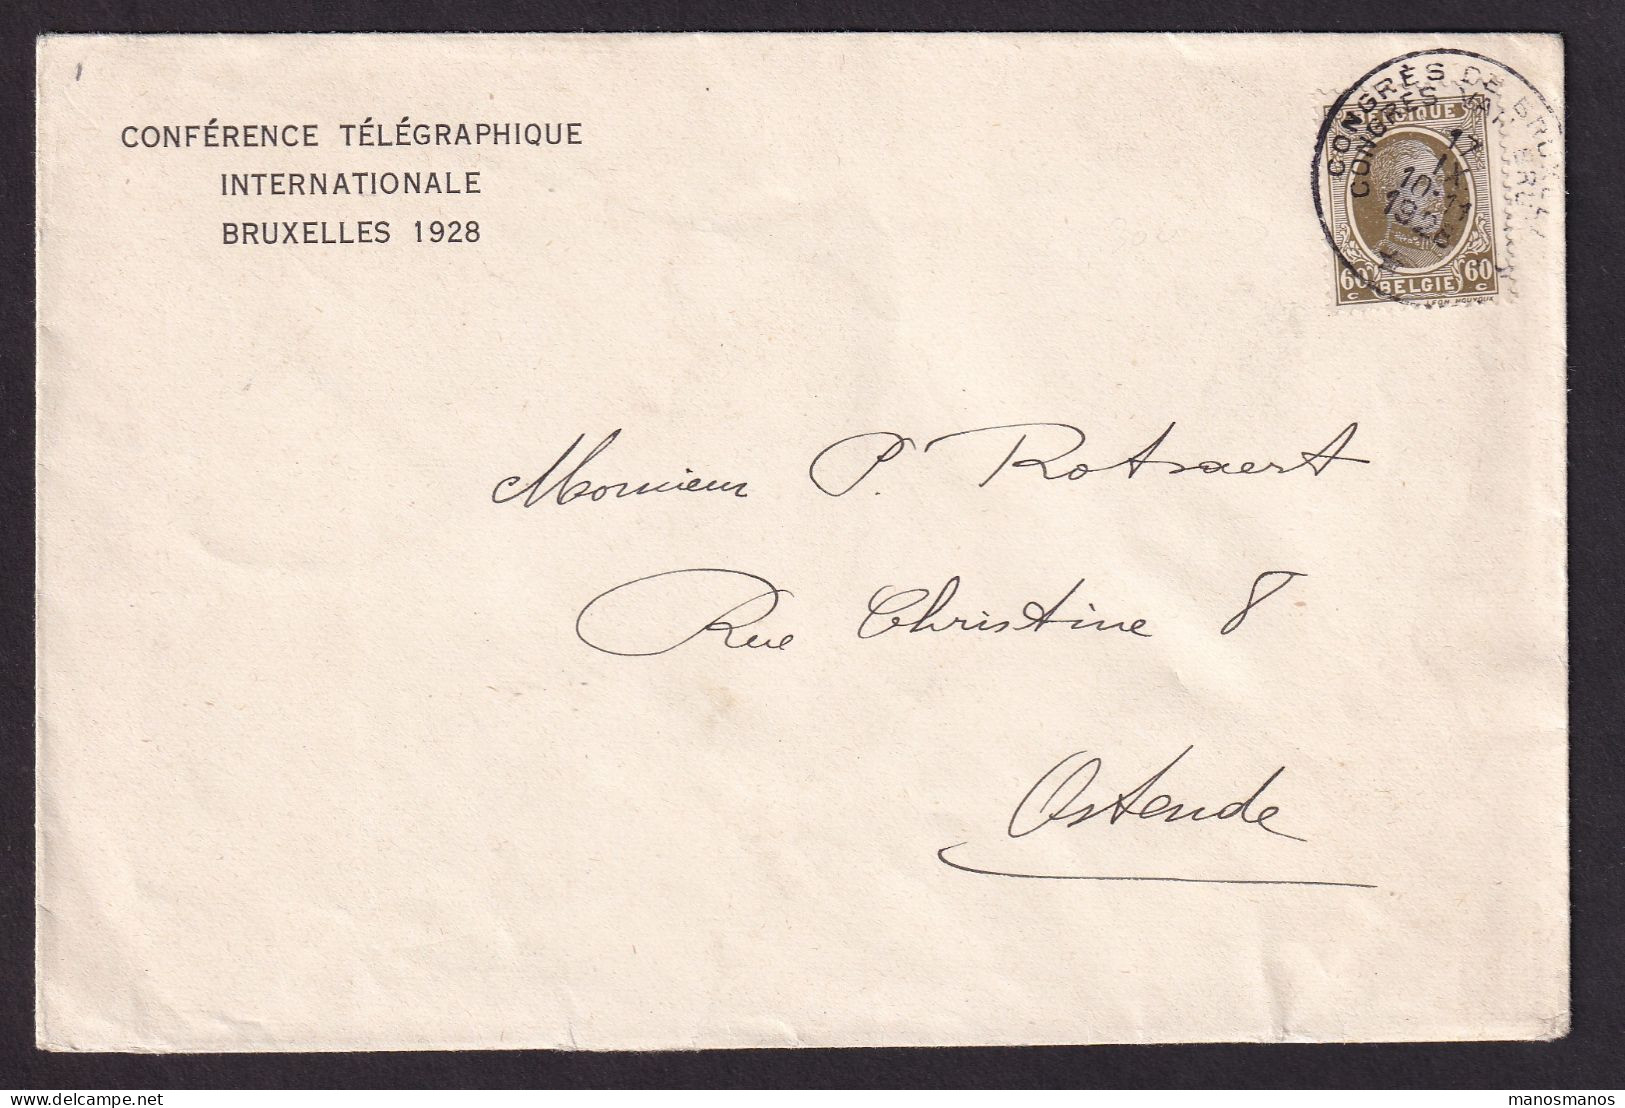 DDEE 848 -- Enveloppe Entete Conférence Télégraphique Internationale BRUXELLES 1928 - TP Houyoux Cachet Du Congrès RRR - Telegrams